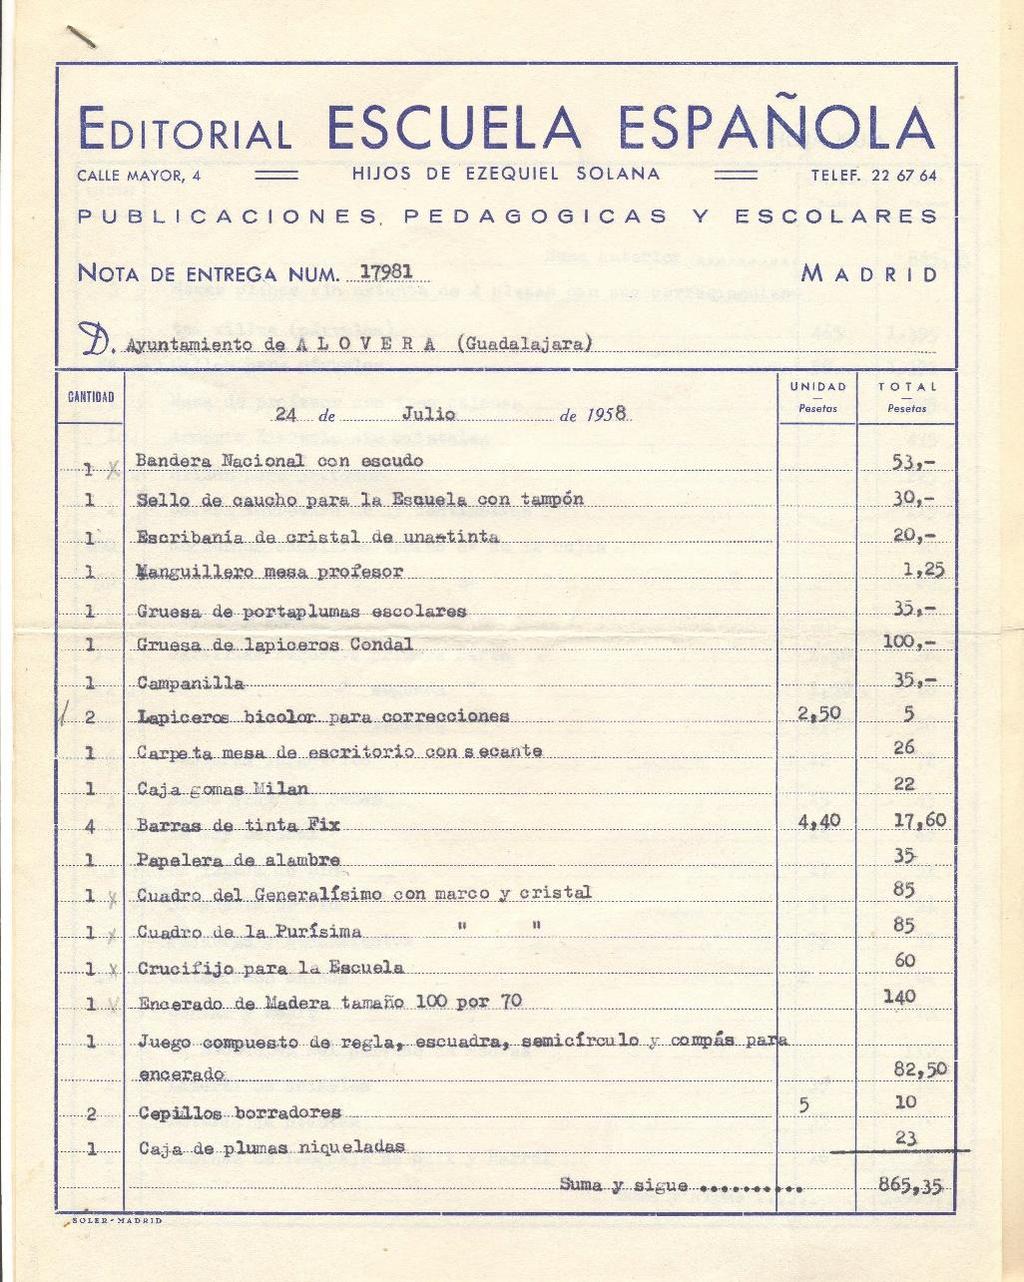 1957 Presupuesto del material necesario